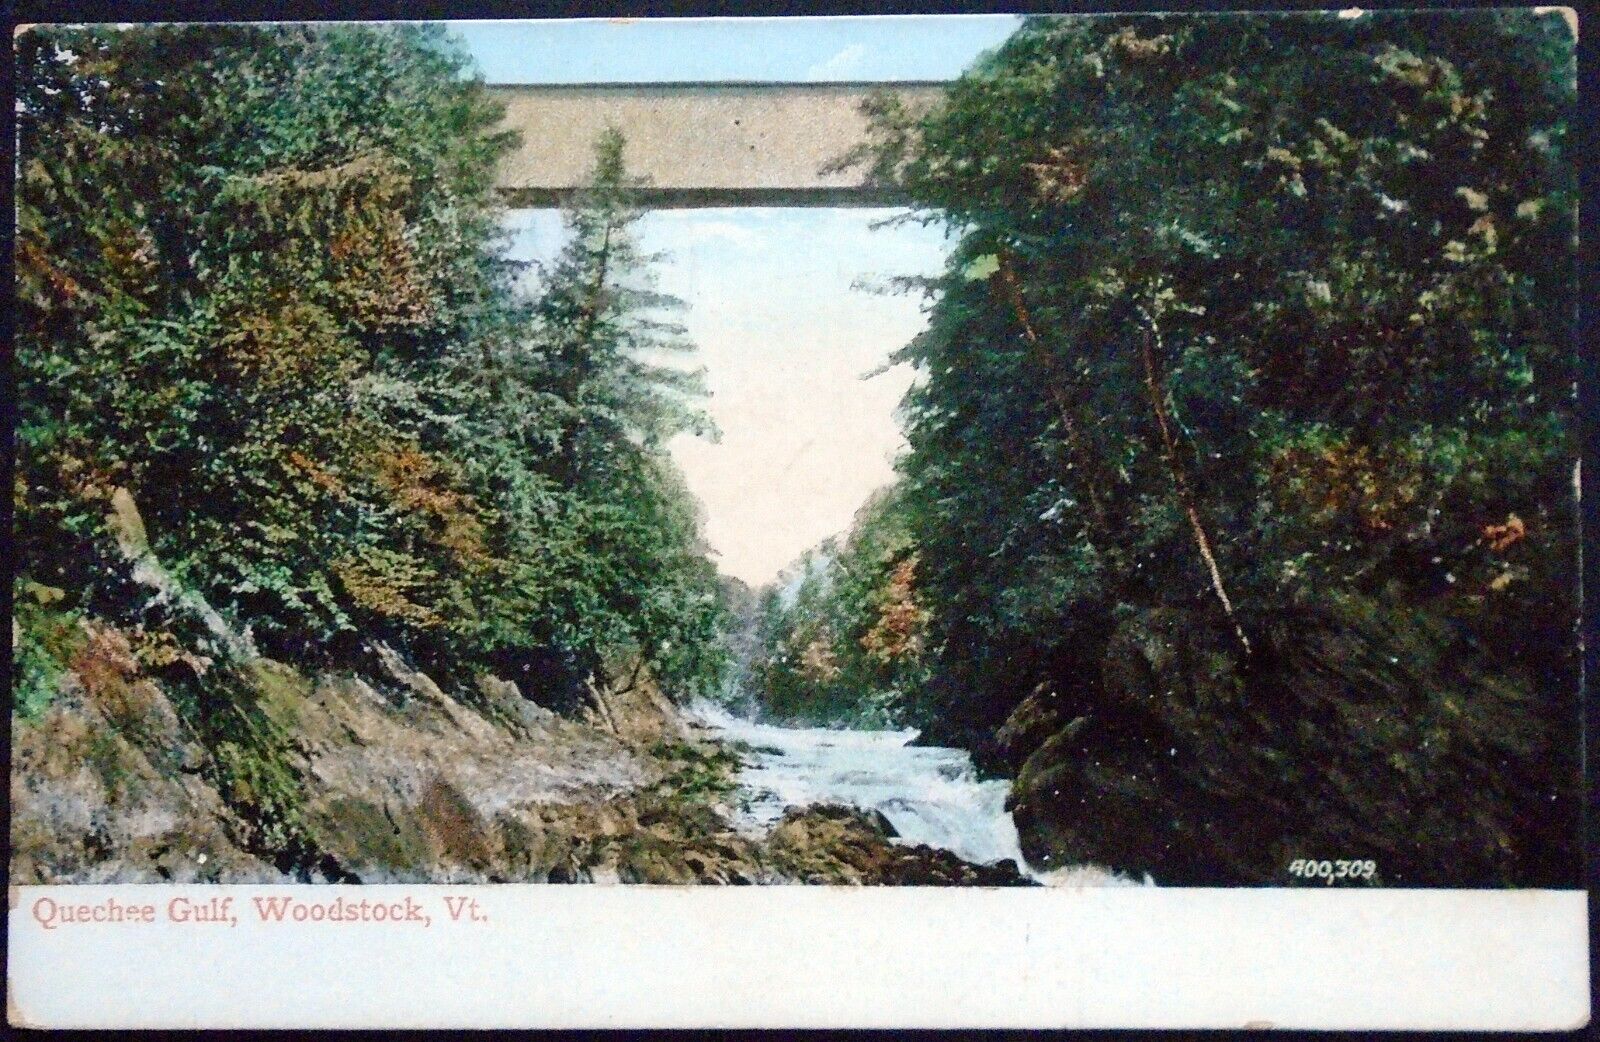 Quechee Gulf and Bridge, Ottauquechee River, Woodstock, Vermont